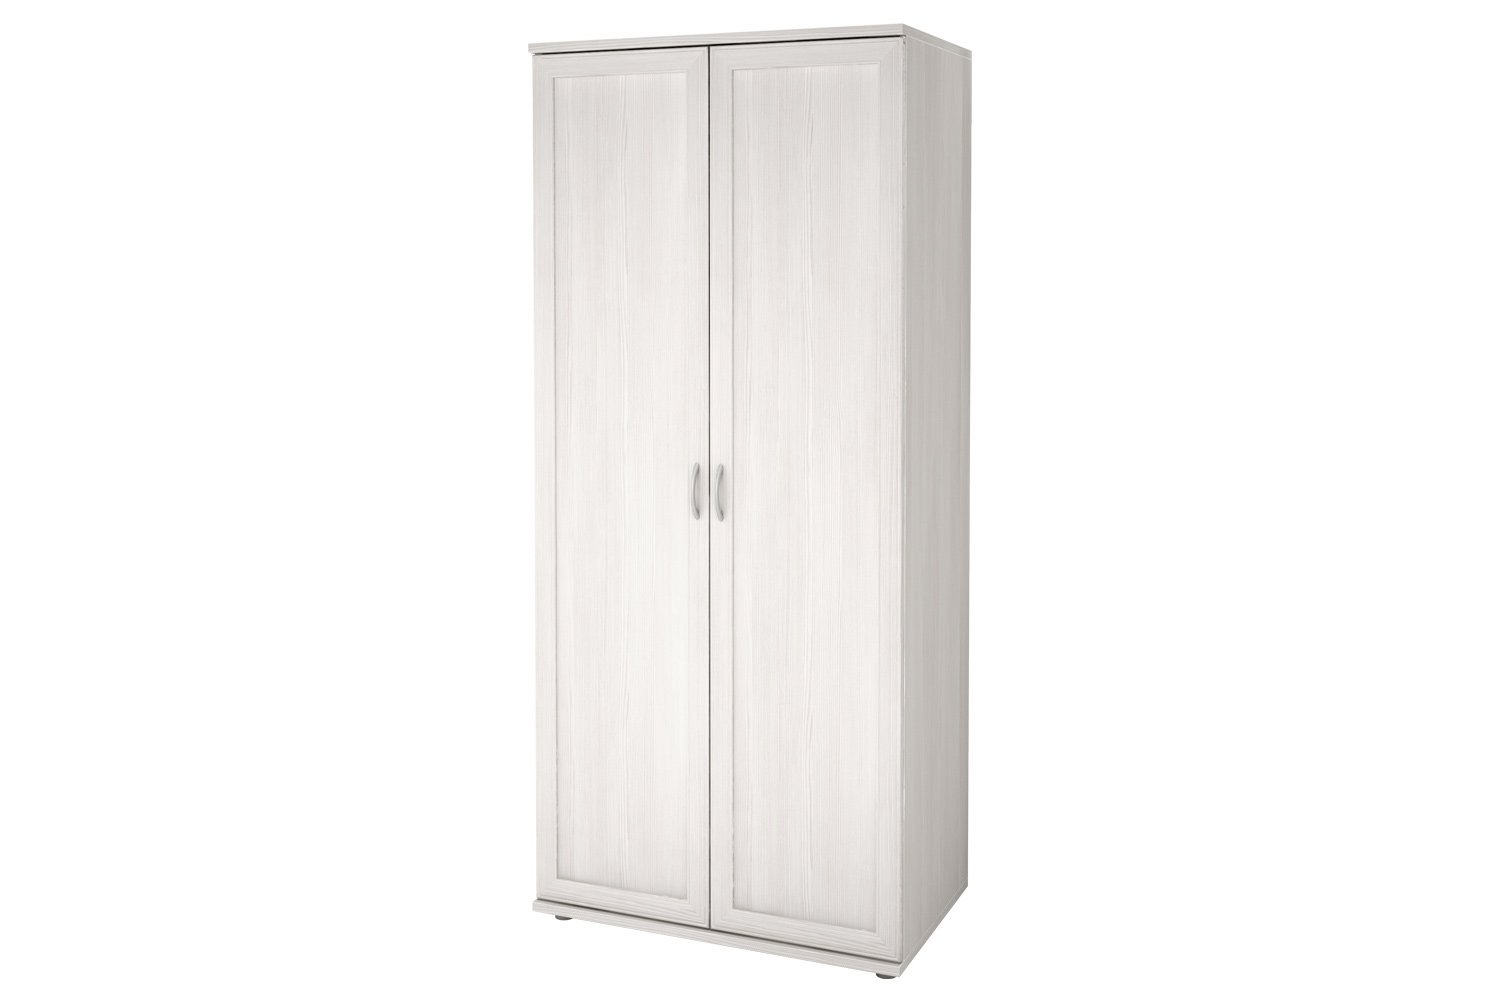 Шкаф для одежды 2-дверный Ника-люкс